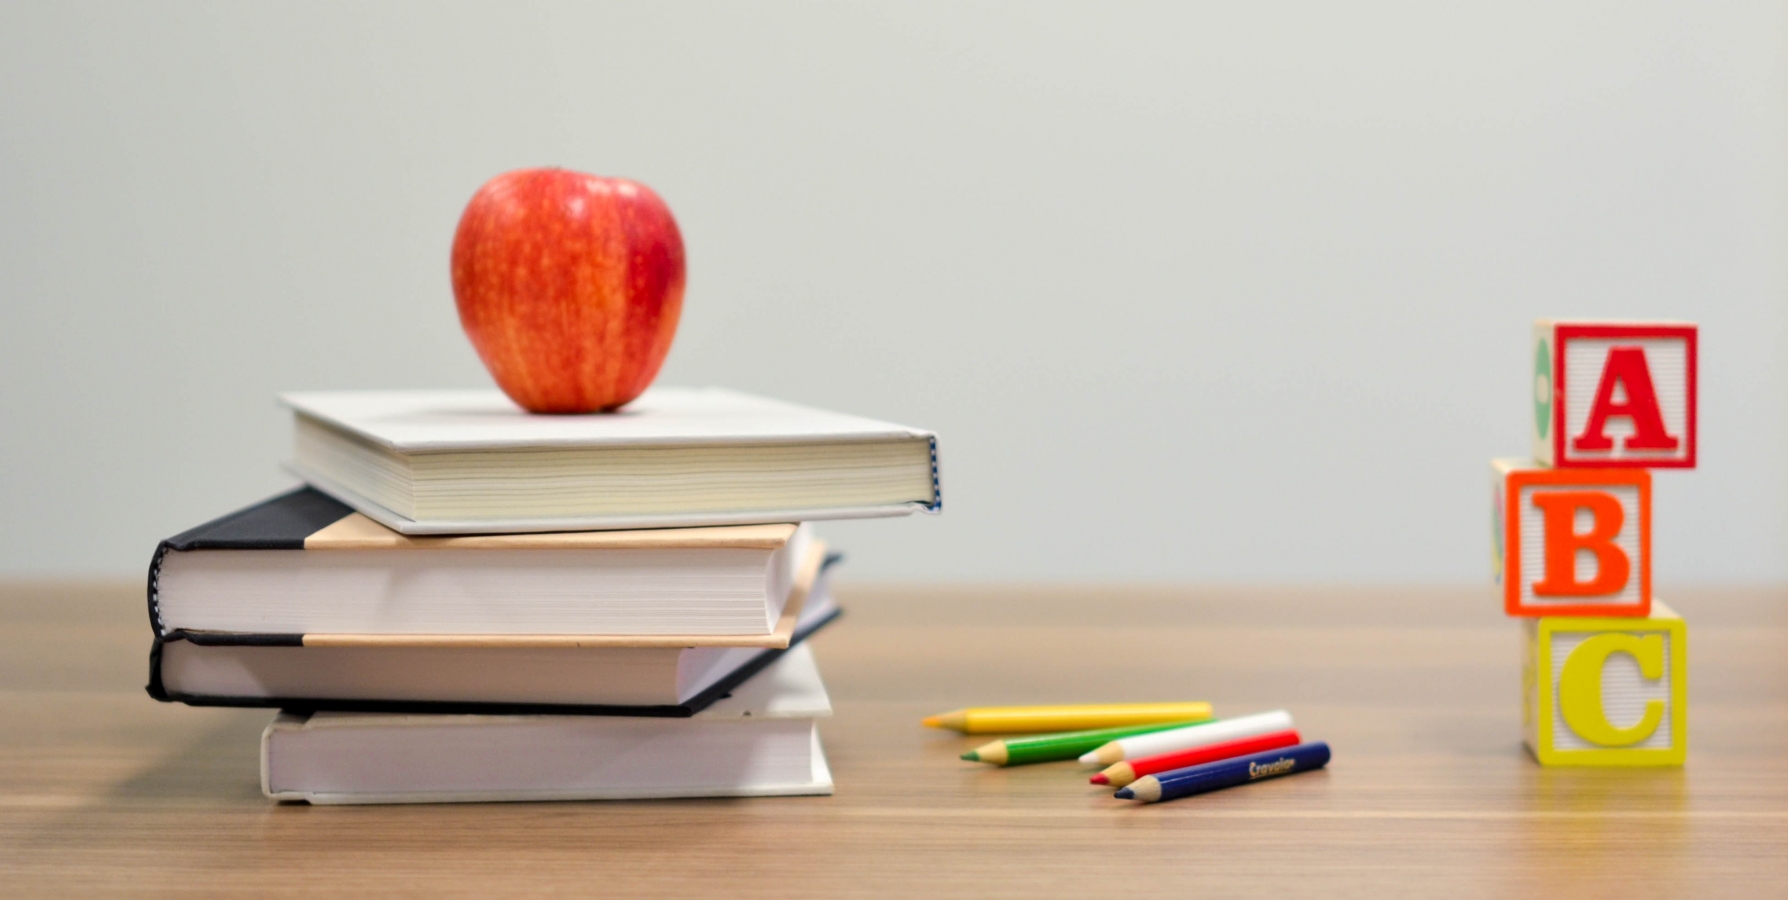 illustrasjon skolestart med en bunke bøker, fargeblyanter og ABC bokstav lekeklosser dandert på en pult, et rødt eple står øverst på bunken av bøker.